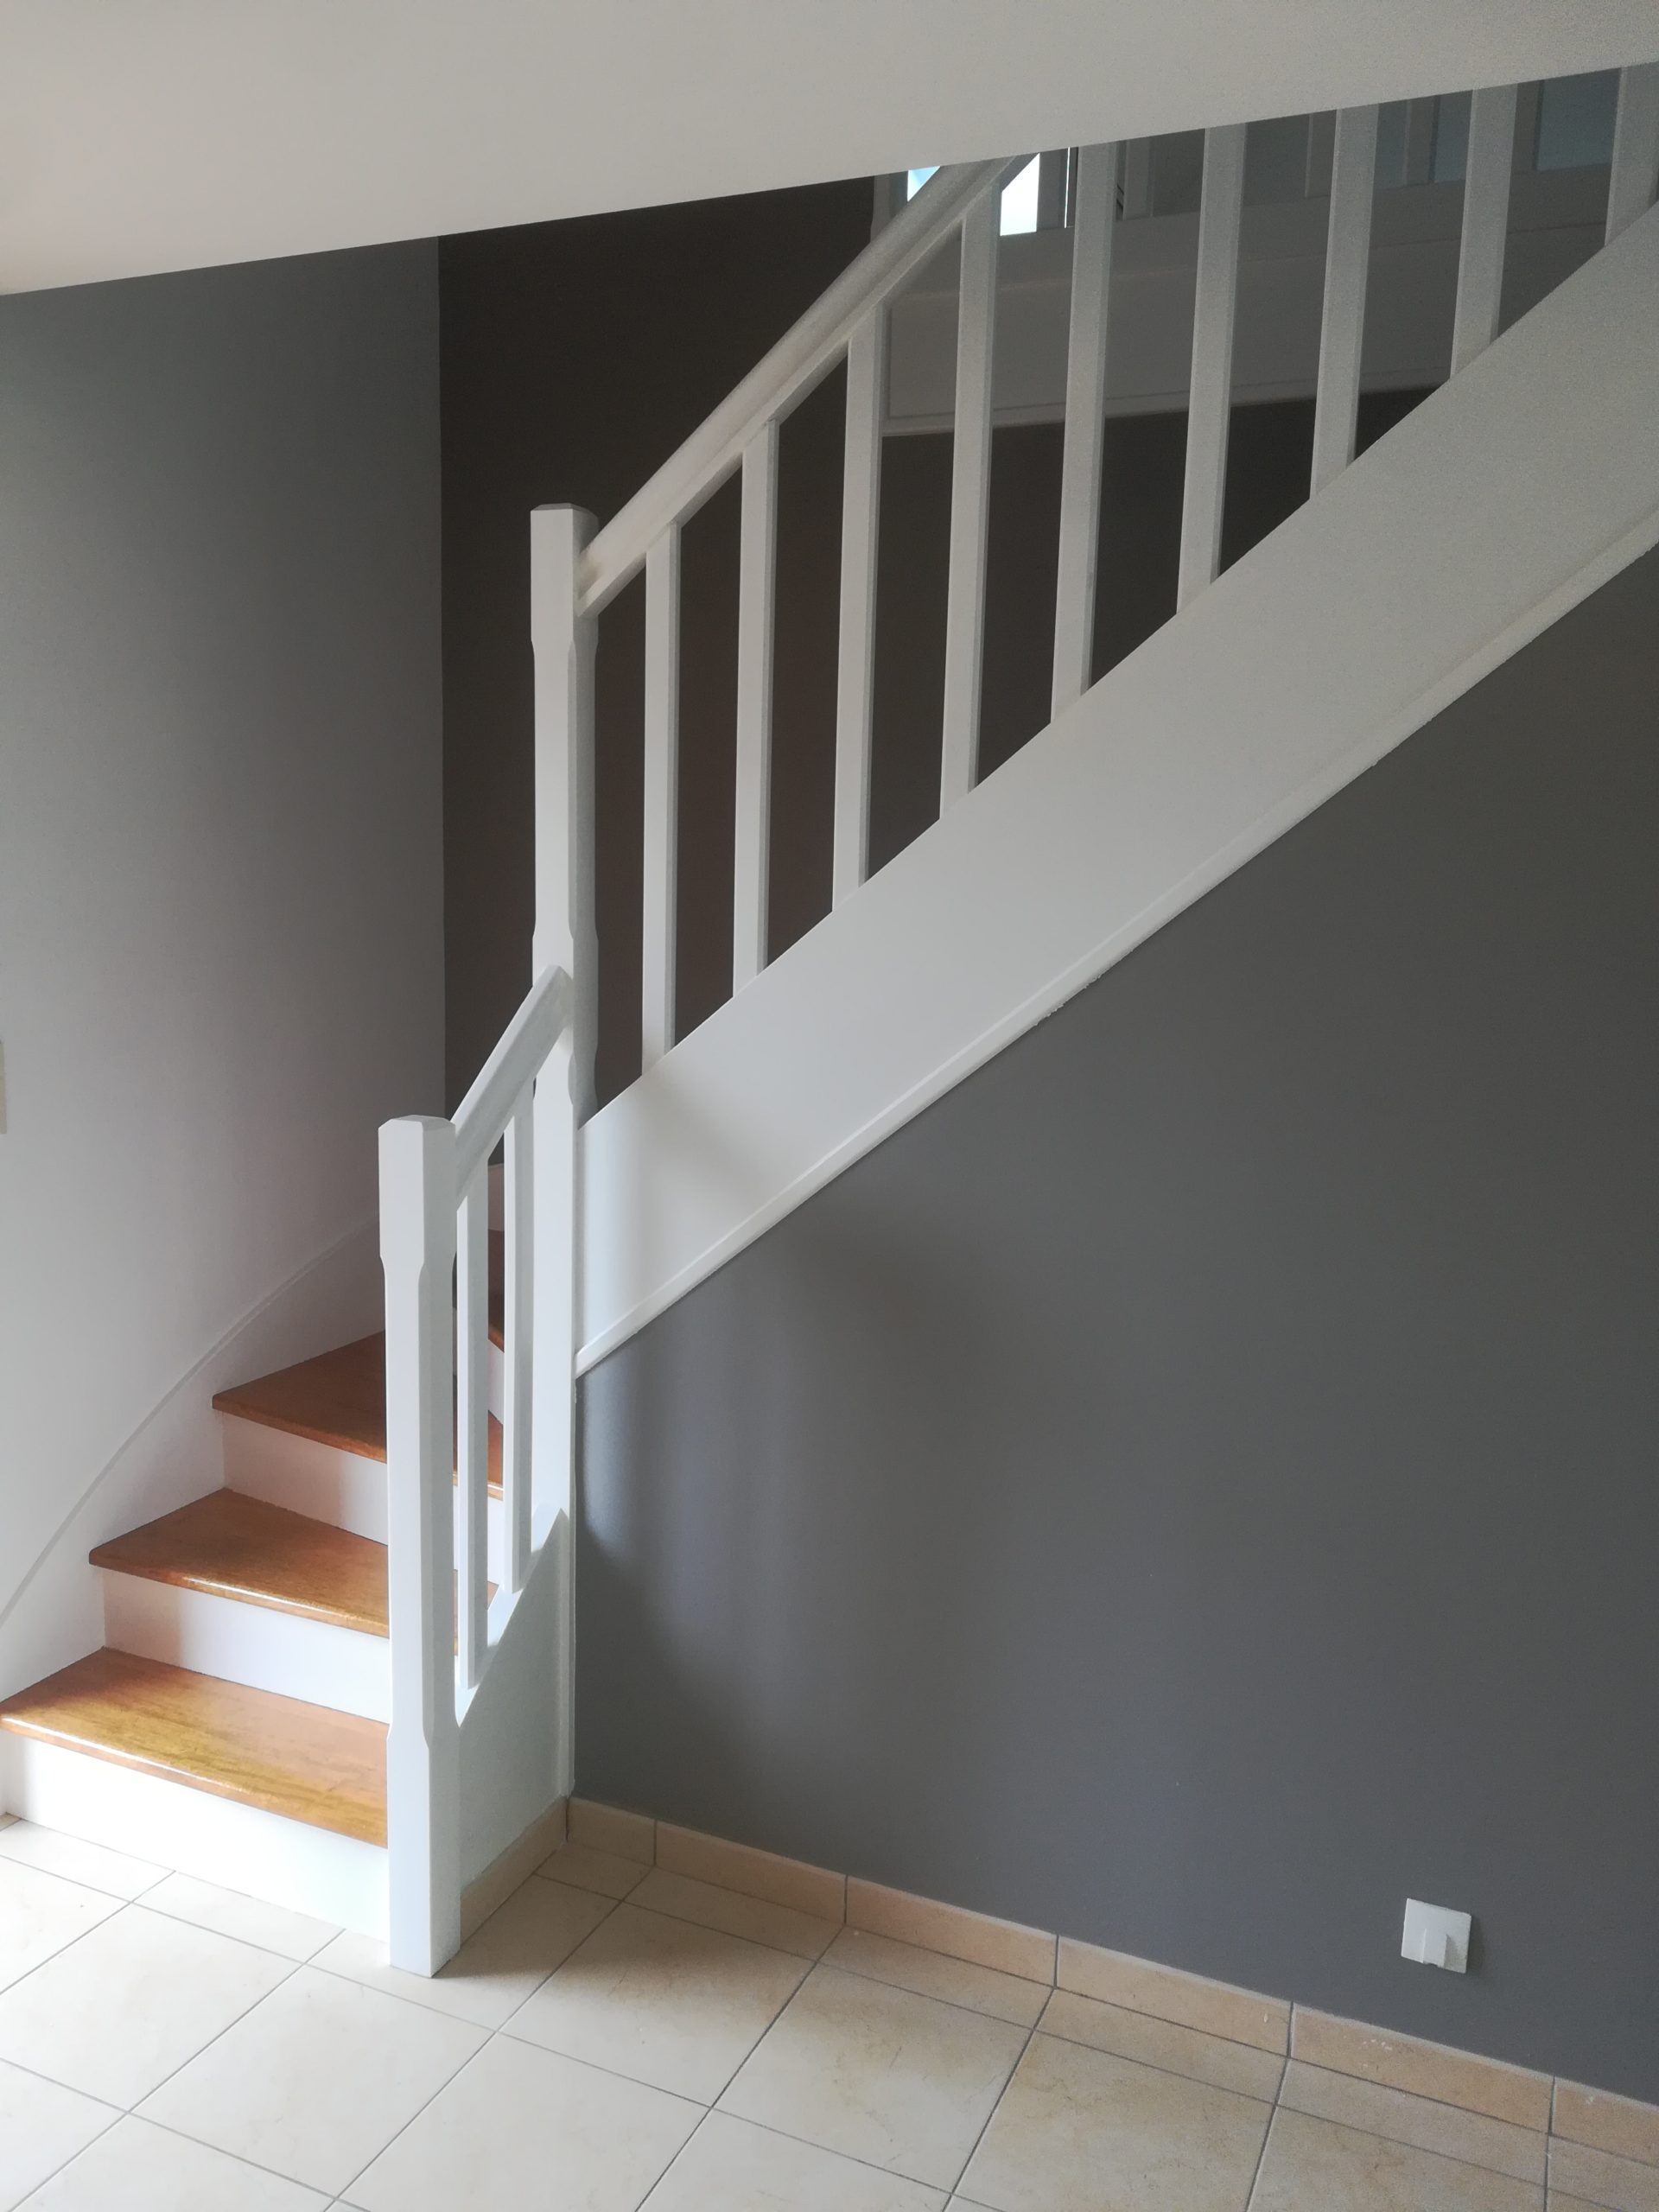 Escalier rénové, rénovation d'escalier en peinture, muzillac, vannes, damgan